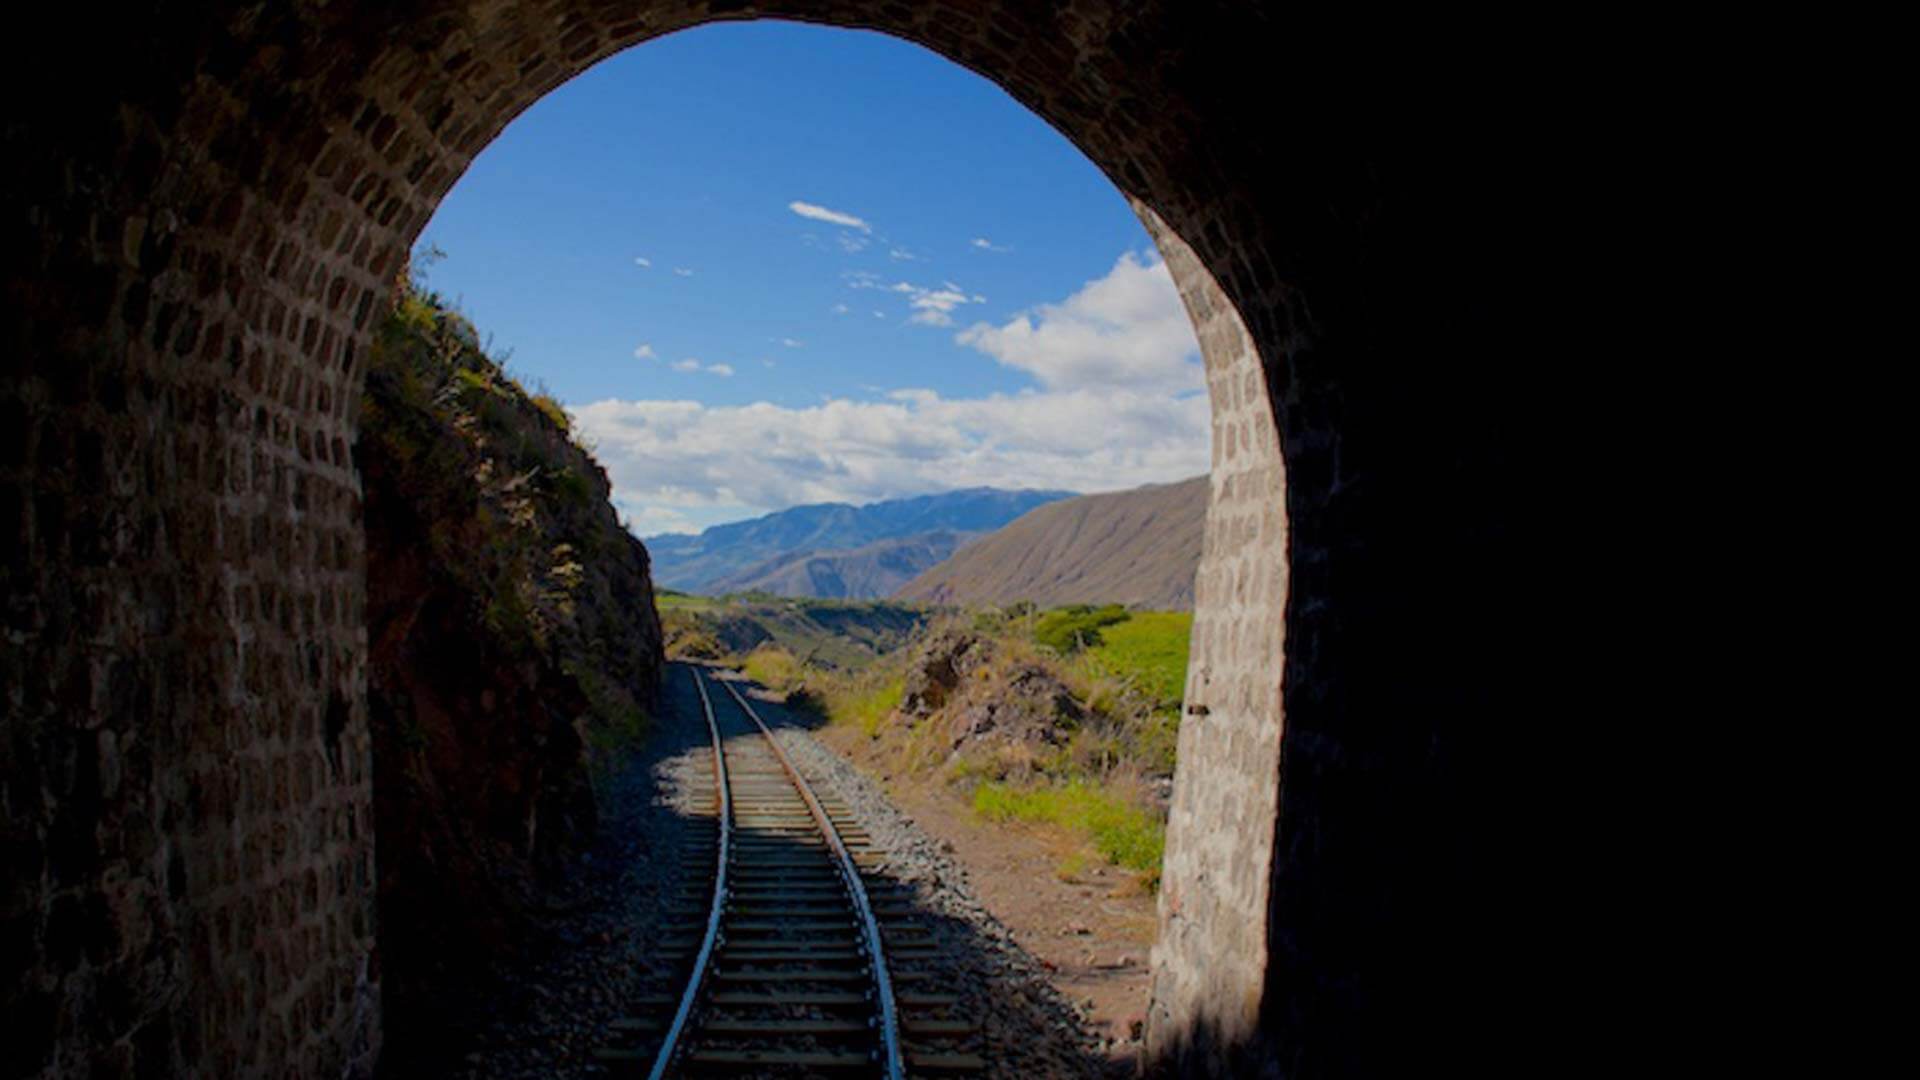 ecuador ibarra freedom libertad train in tunnel